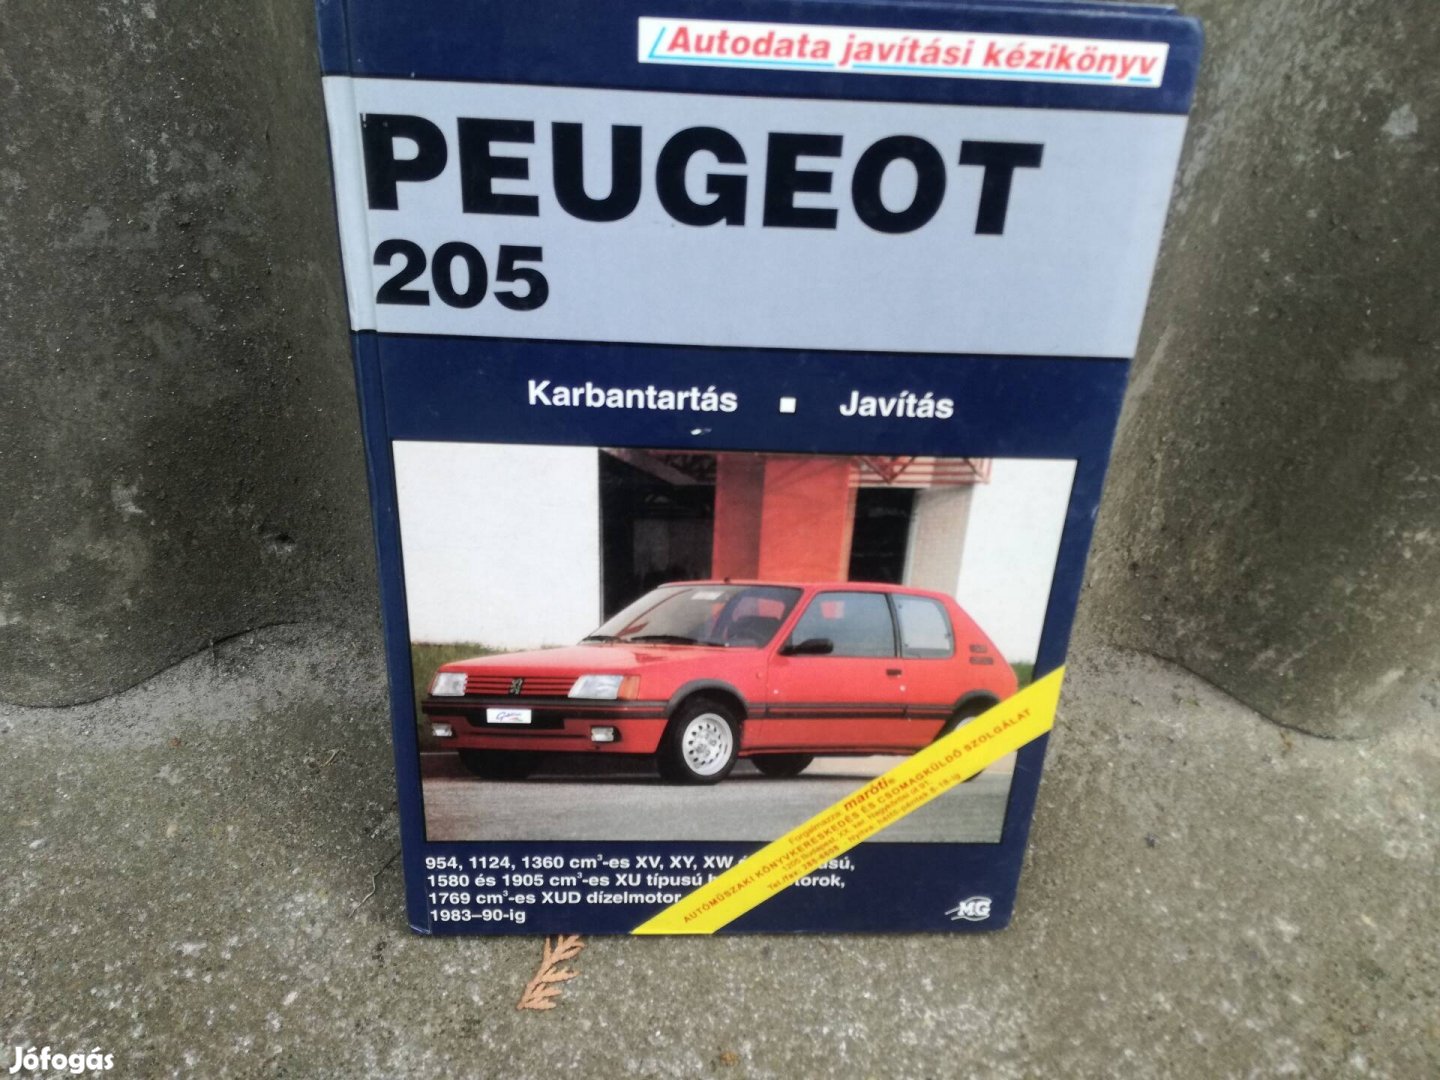 Peugeot 205 javítási könyv magyar nyelvű 